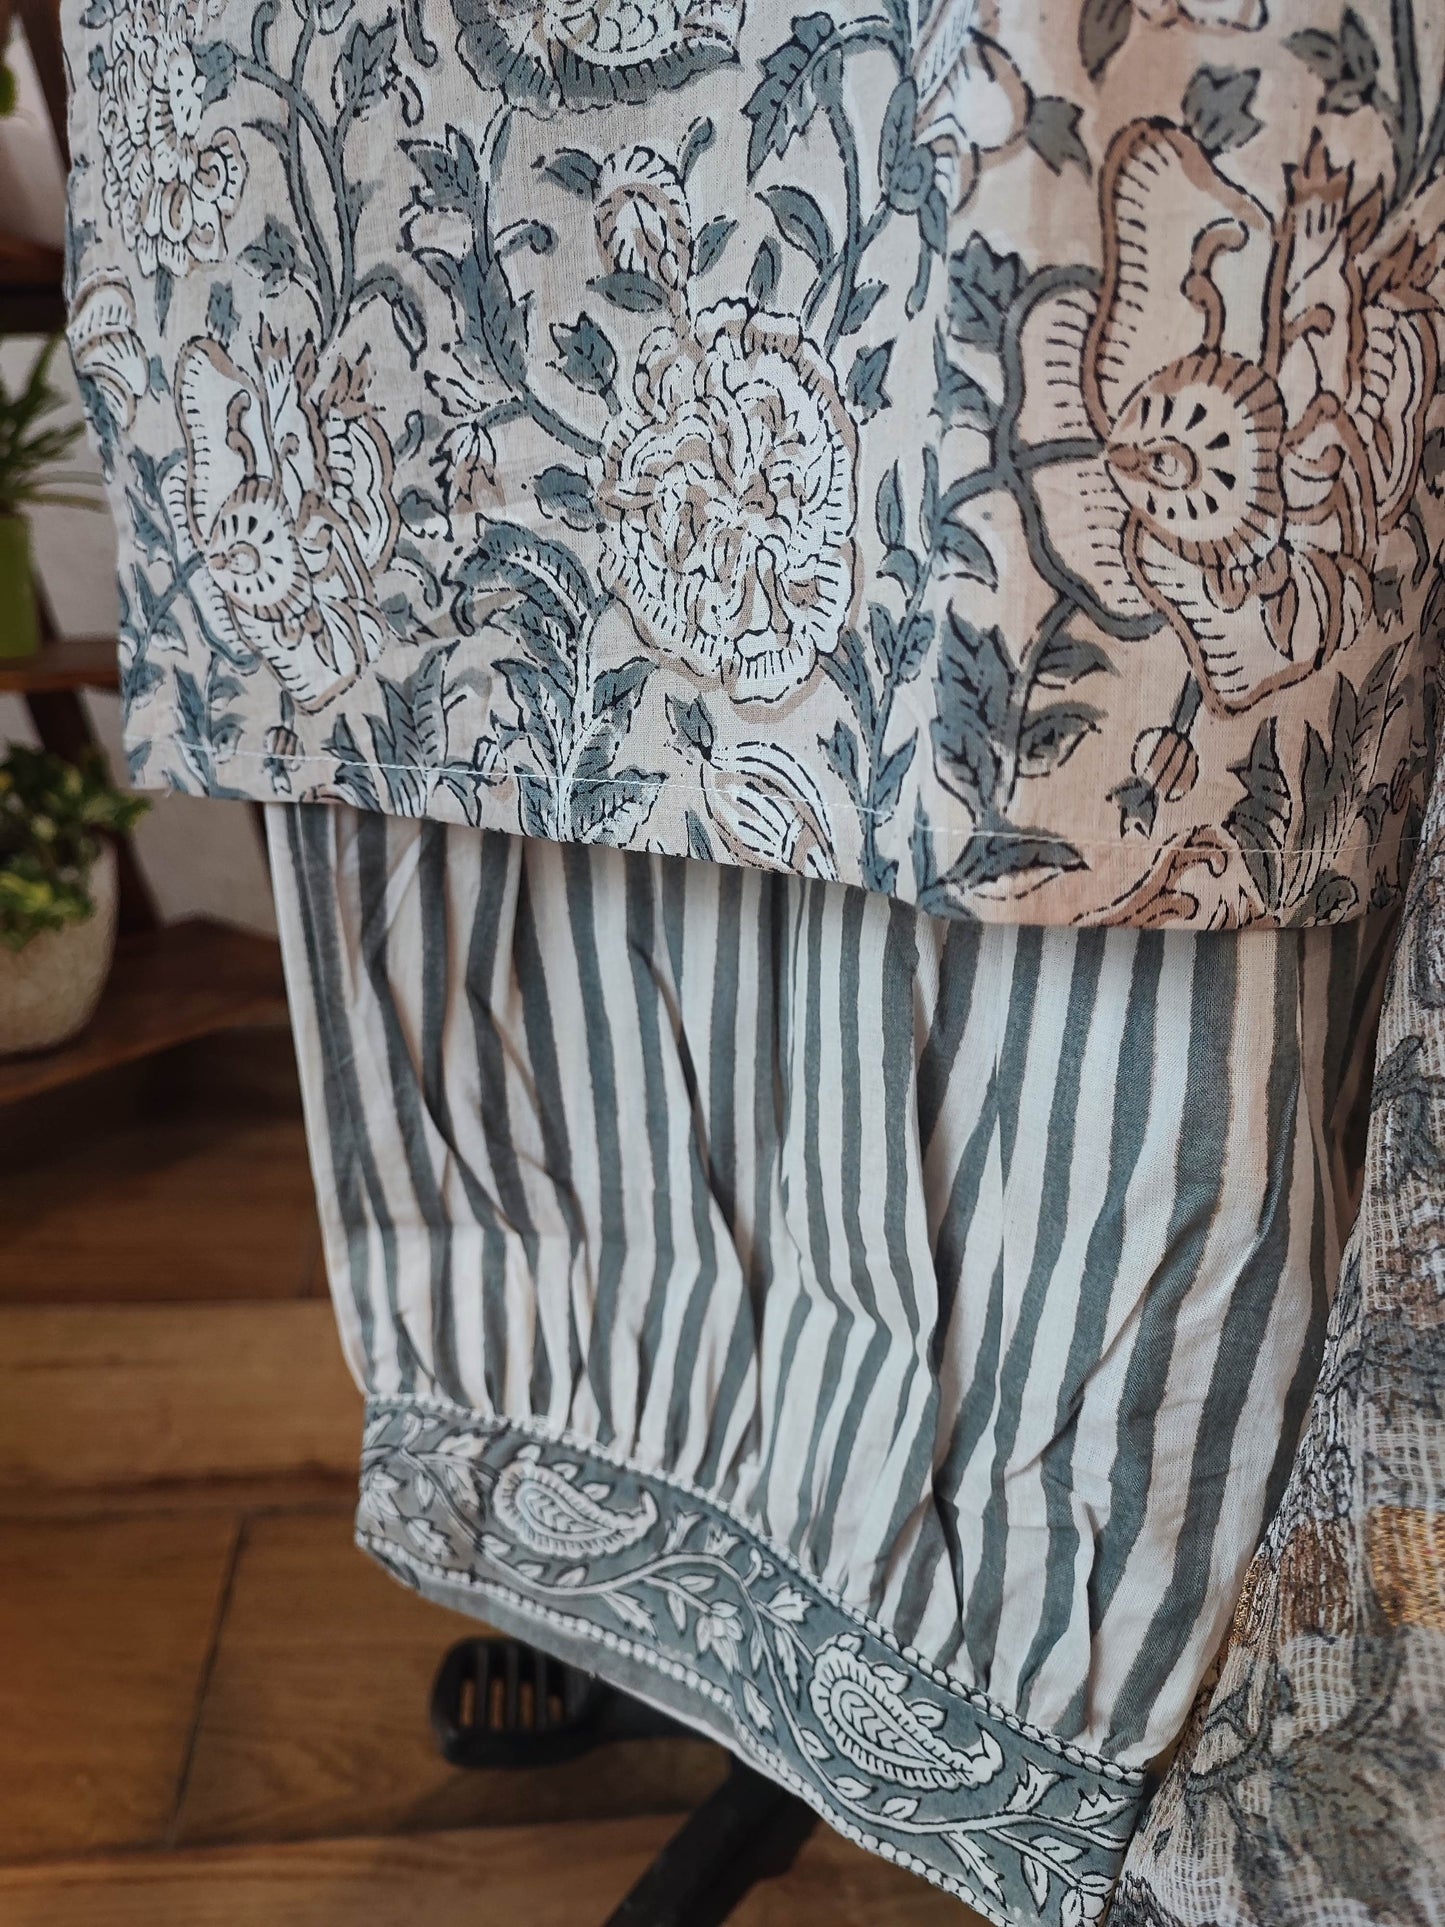 Stone Grey Floral Cotton Suit Set With Kota Dupatta